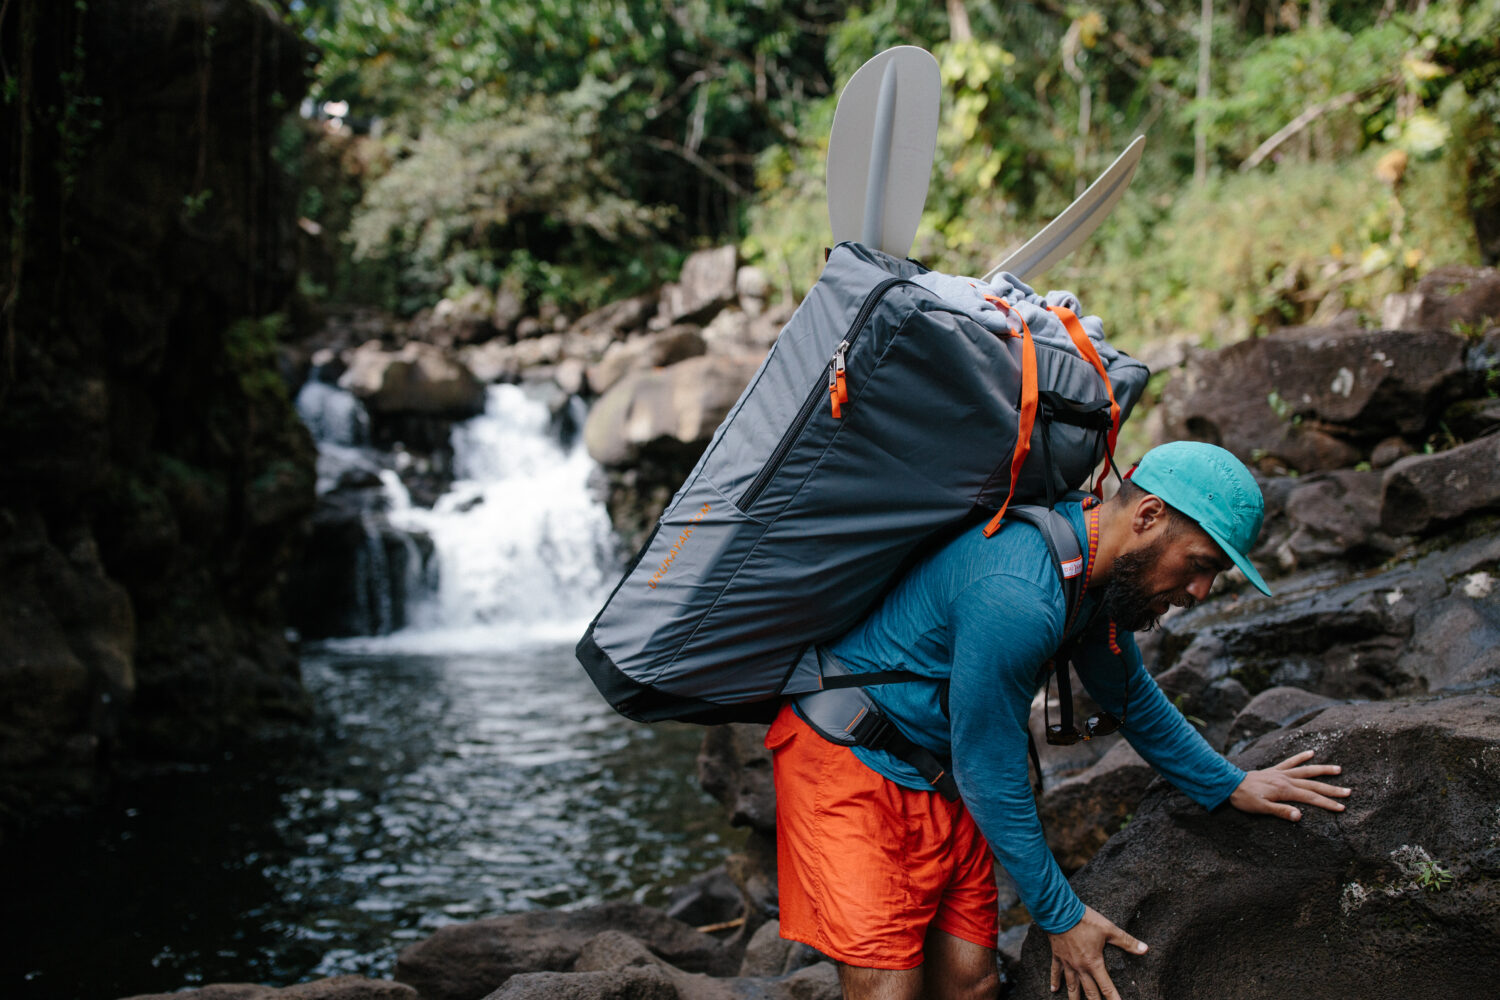 Bild zeigt Mann, der ein Oru Kayak in einem Rucksack inkl. Paddel auf dem Rücken trägt